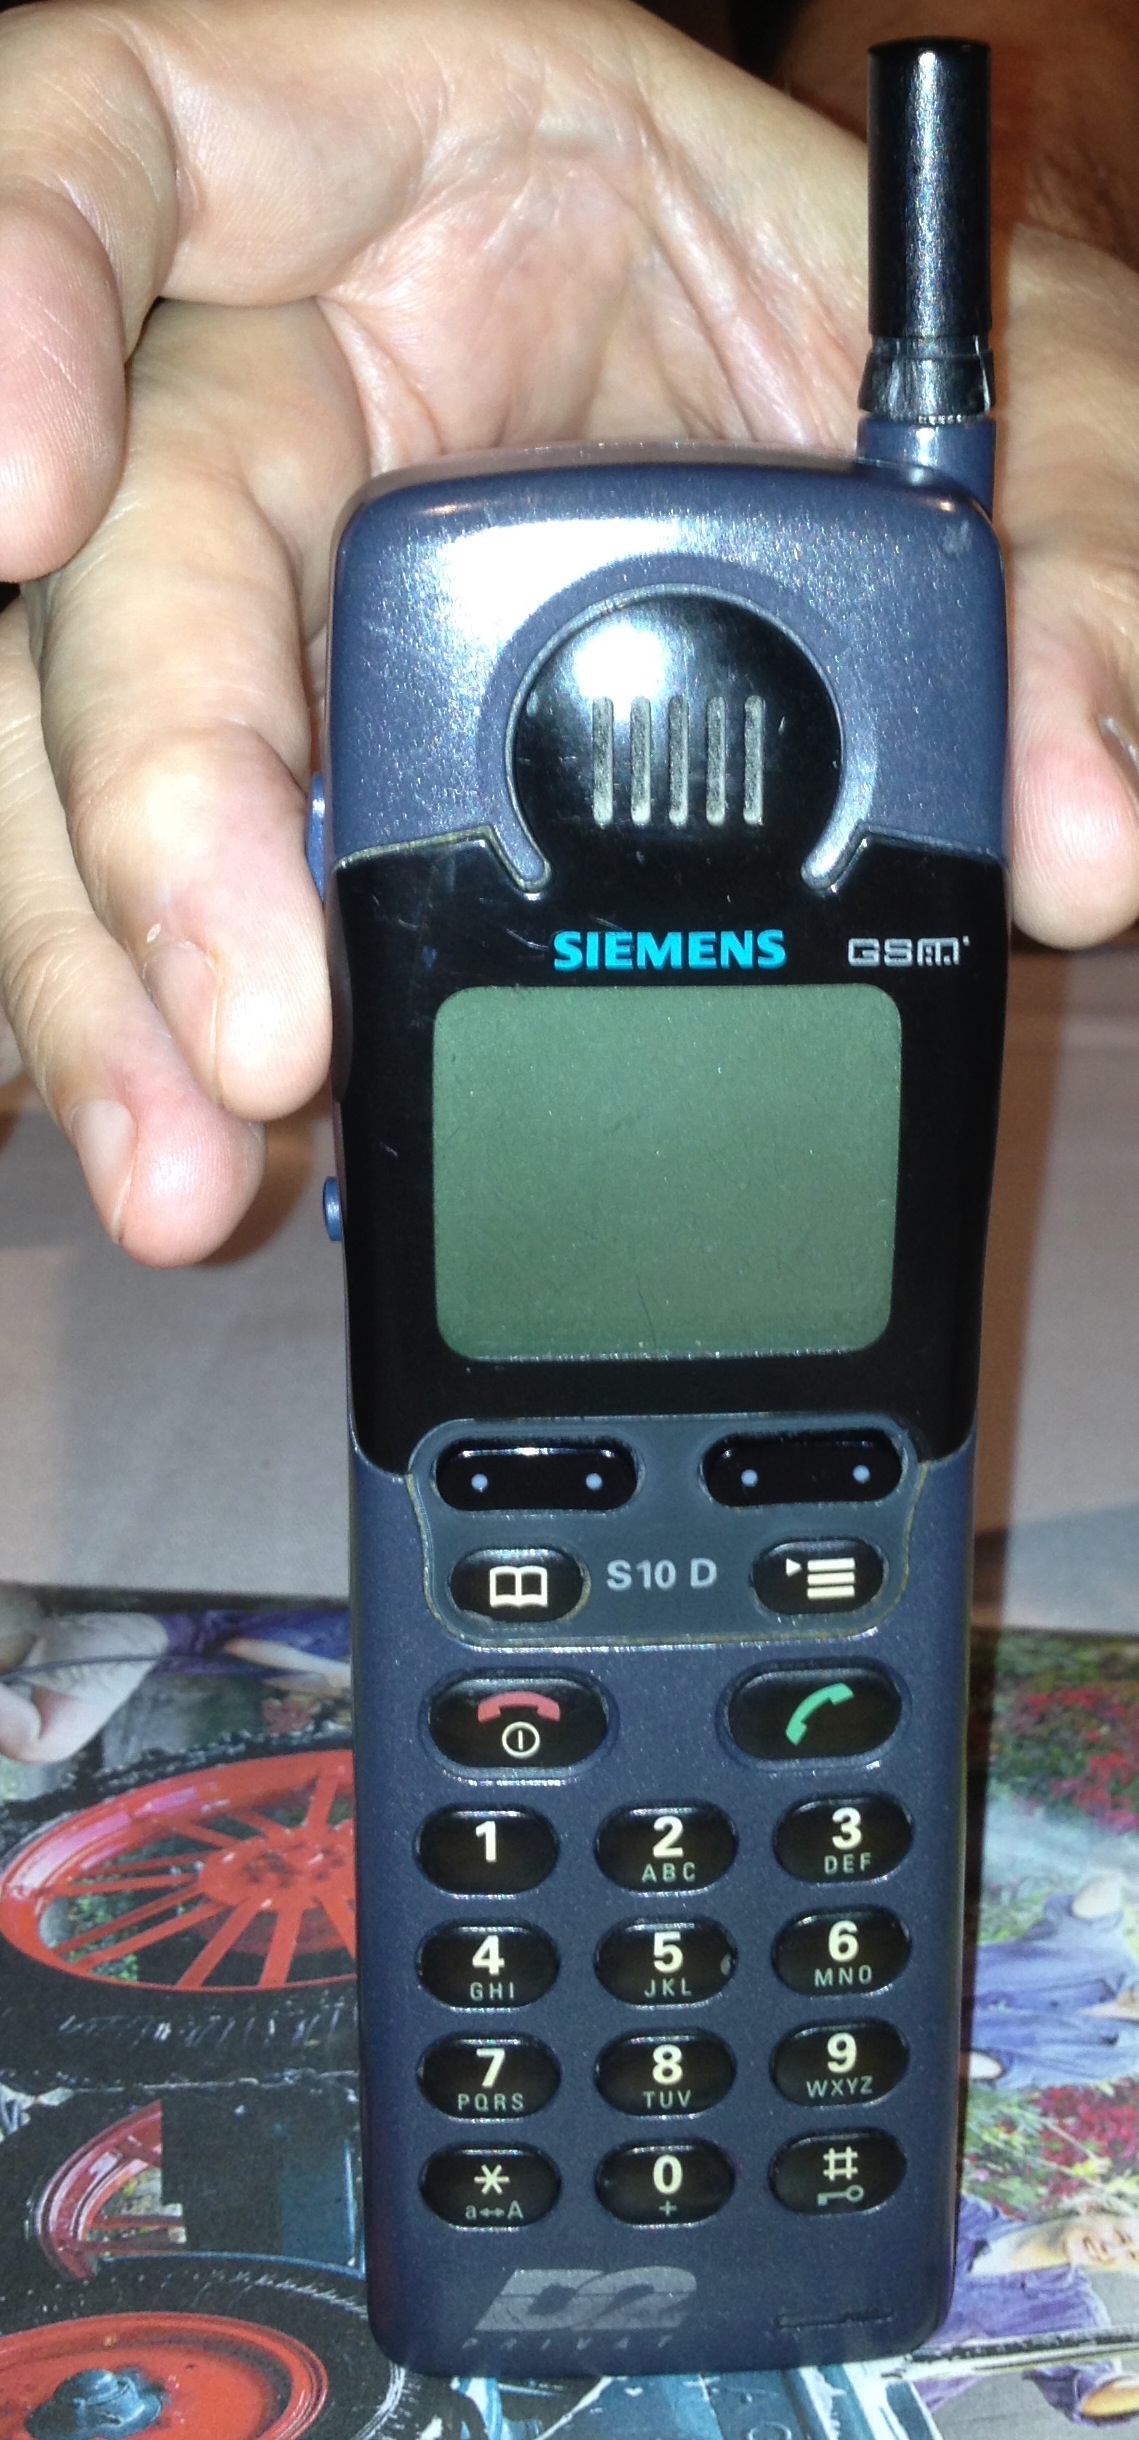 Siemens-Mobiltelefon-Technologie-Kommunikation-c-PR-Agentur-Fink-Fuchs